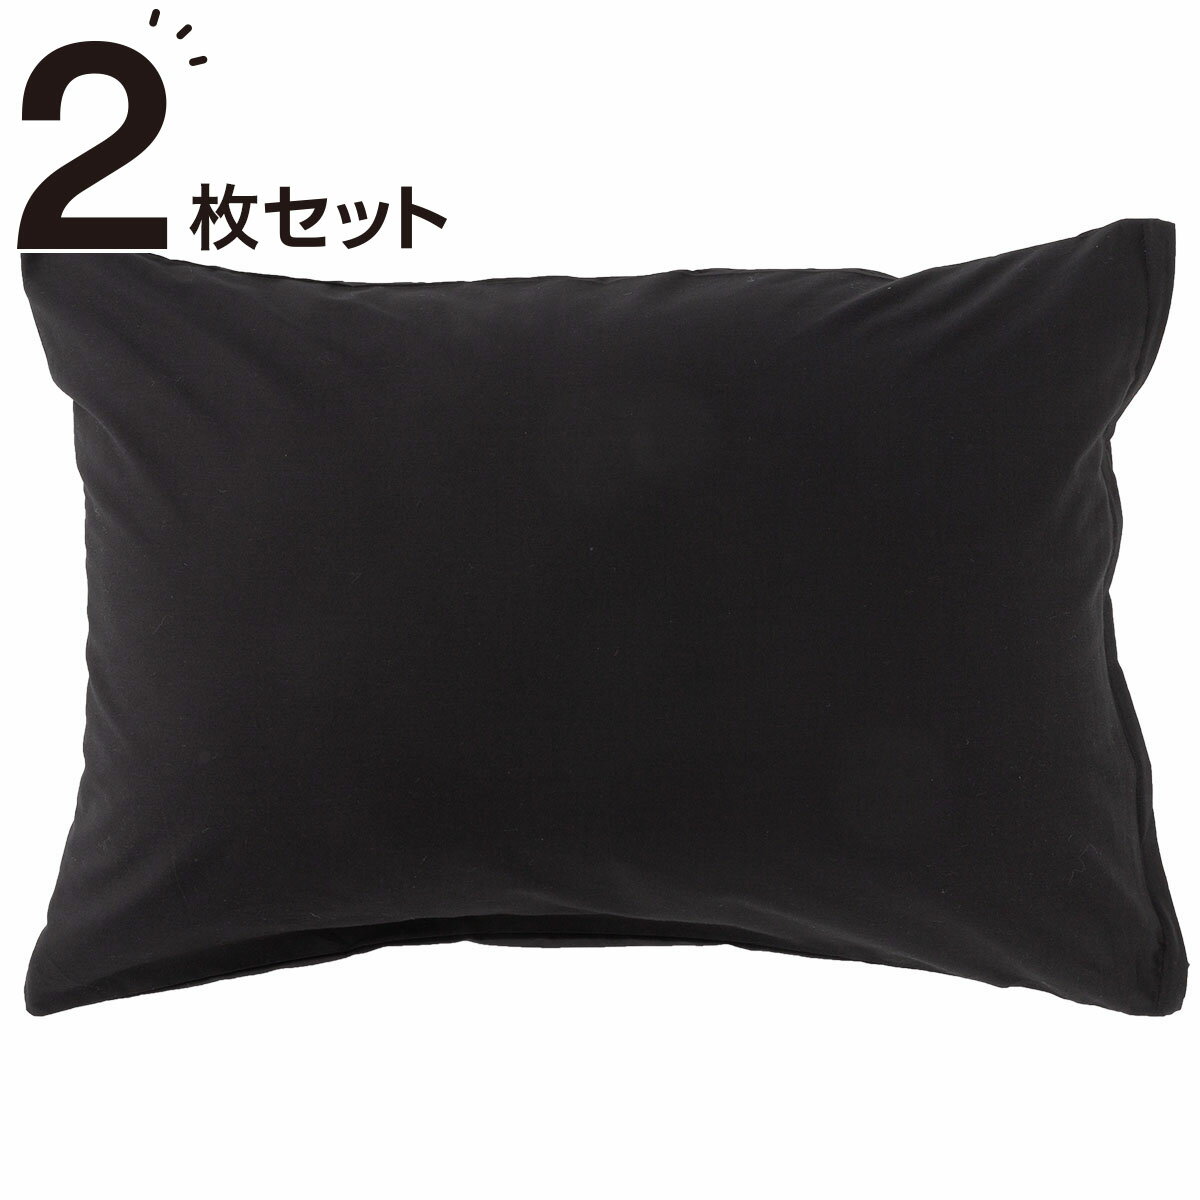 ニトリの枕カバー 2枚セット(パレット3 BK2)   【1年保証】(布団・寝具)